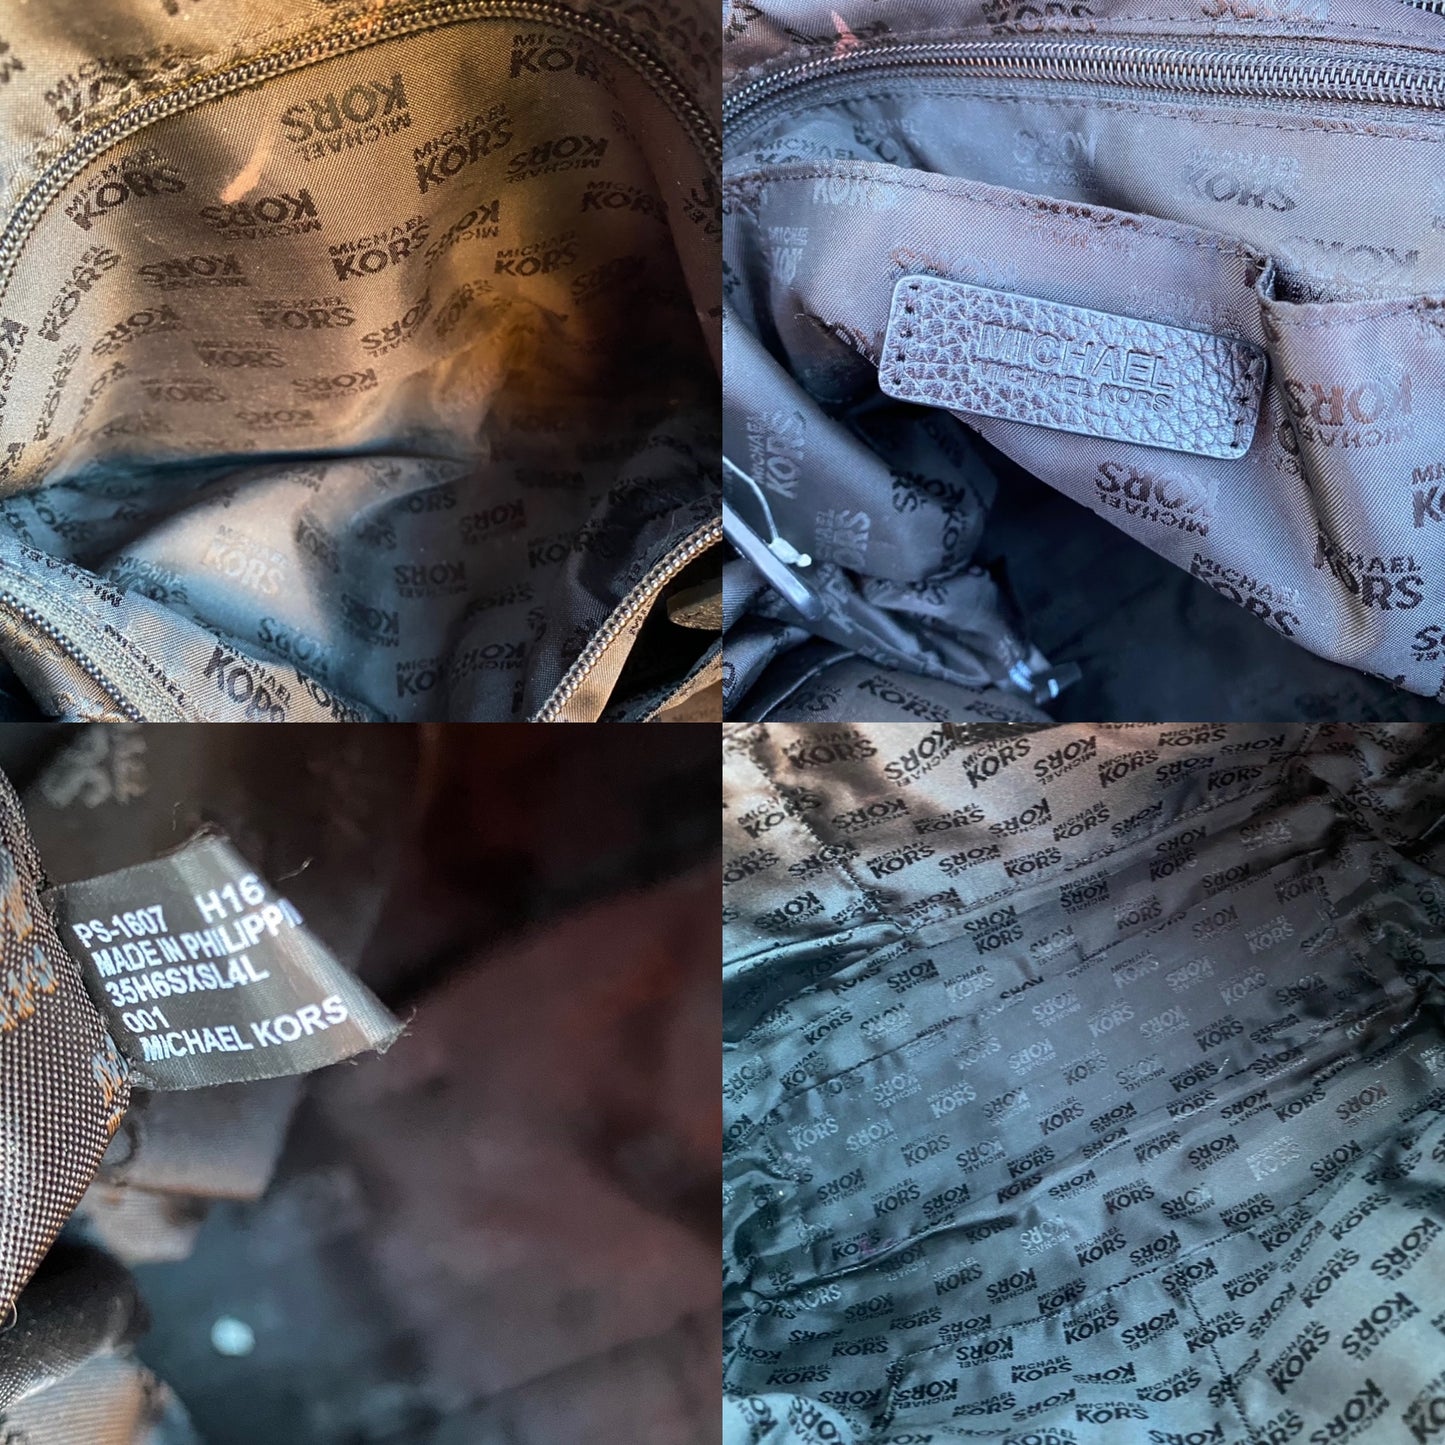 Michael Kors Large Pebbled Leather Shoulder Bag